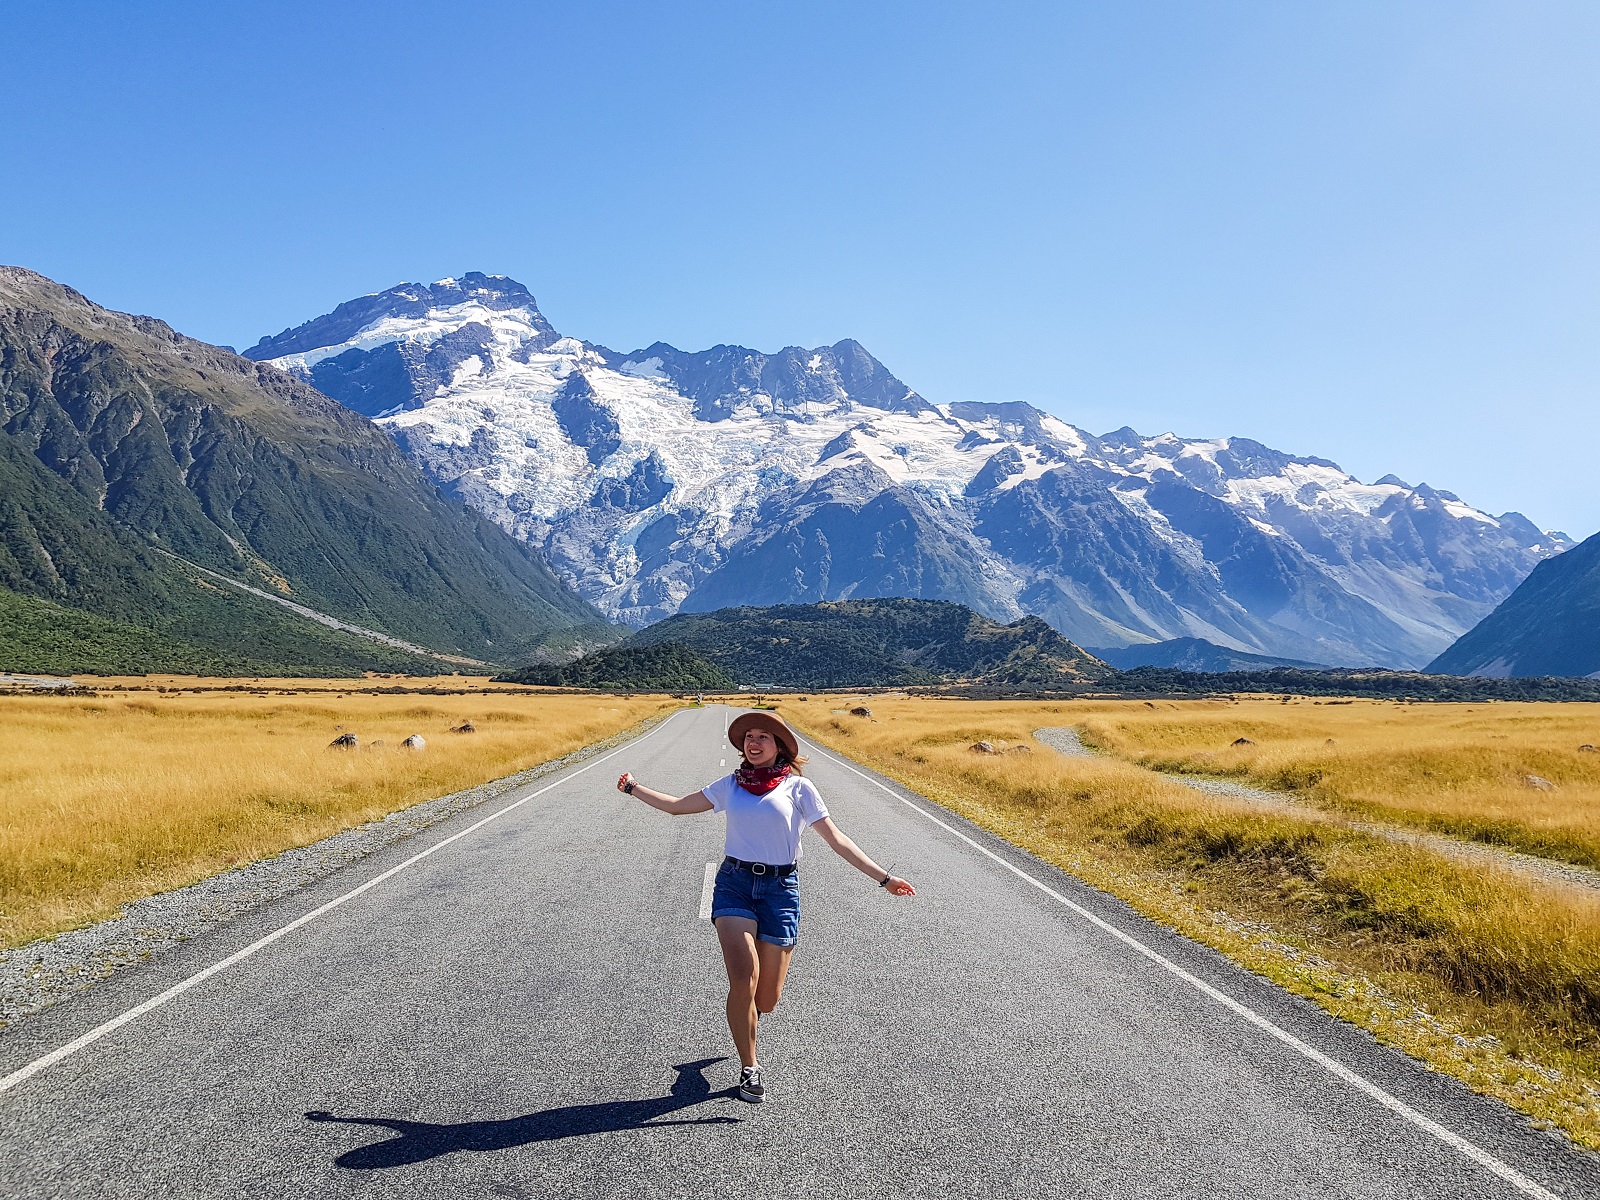 Nowa Zelandia - roadtrip po kraju kiwi | Pociąg do podróży online